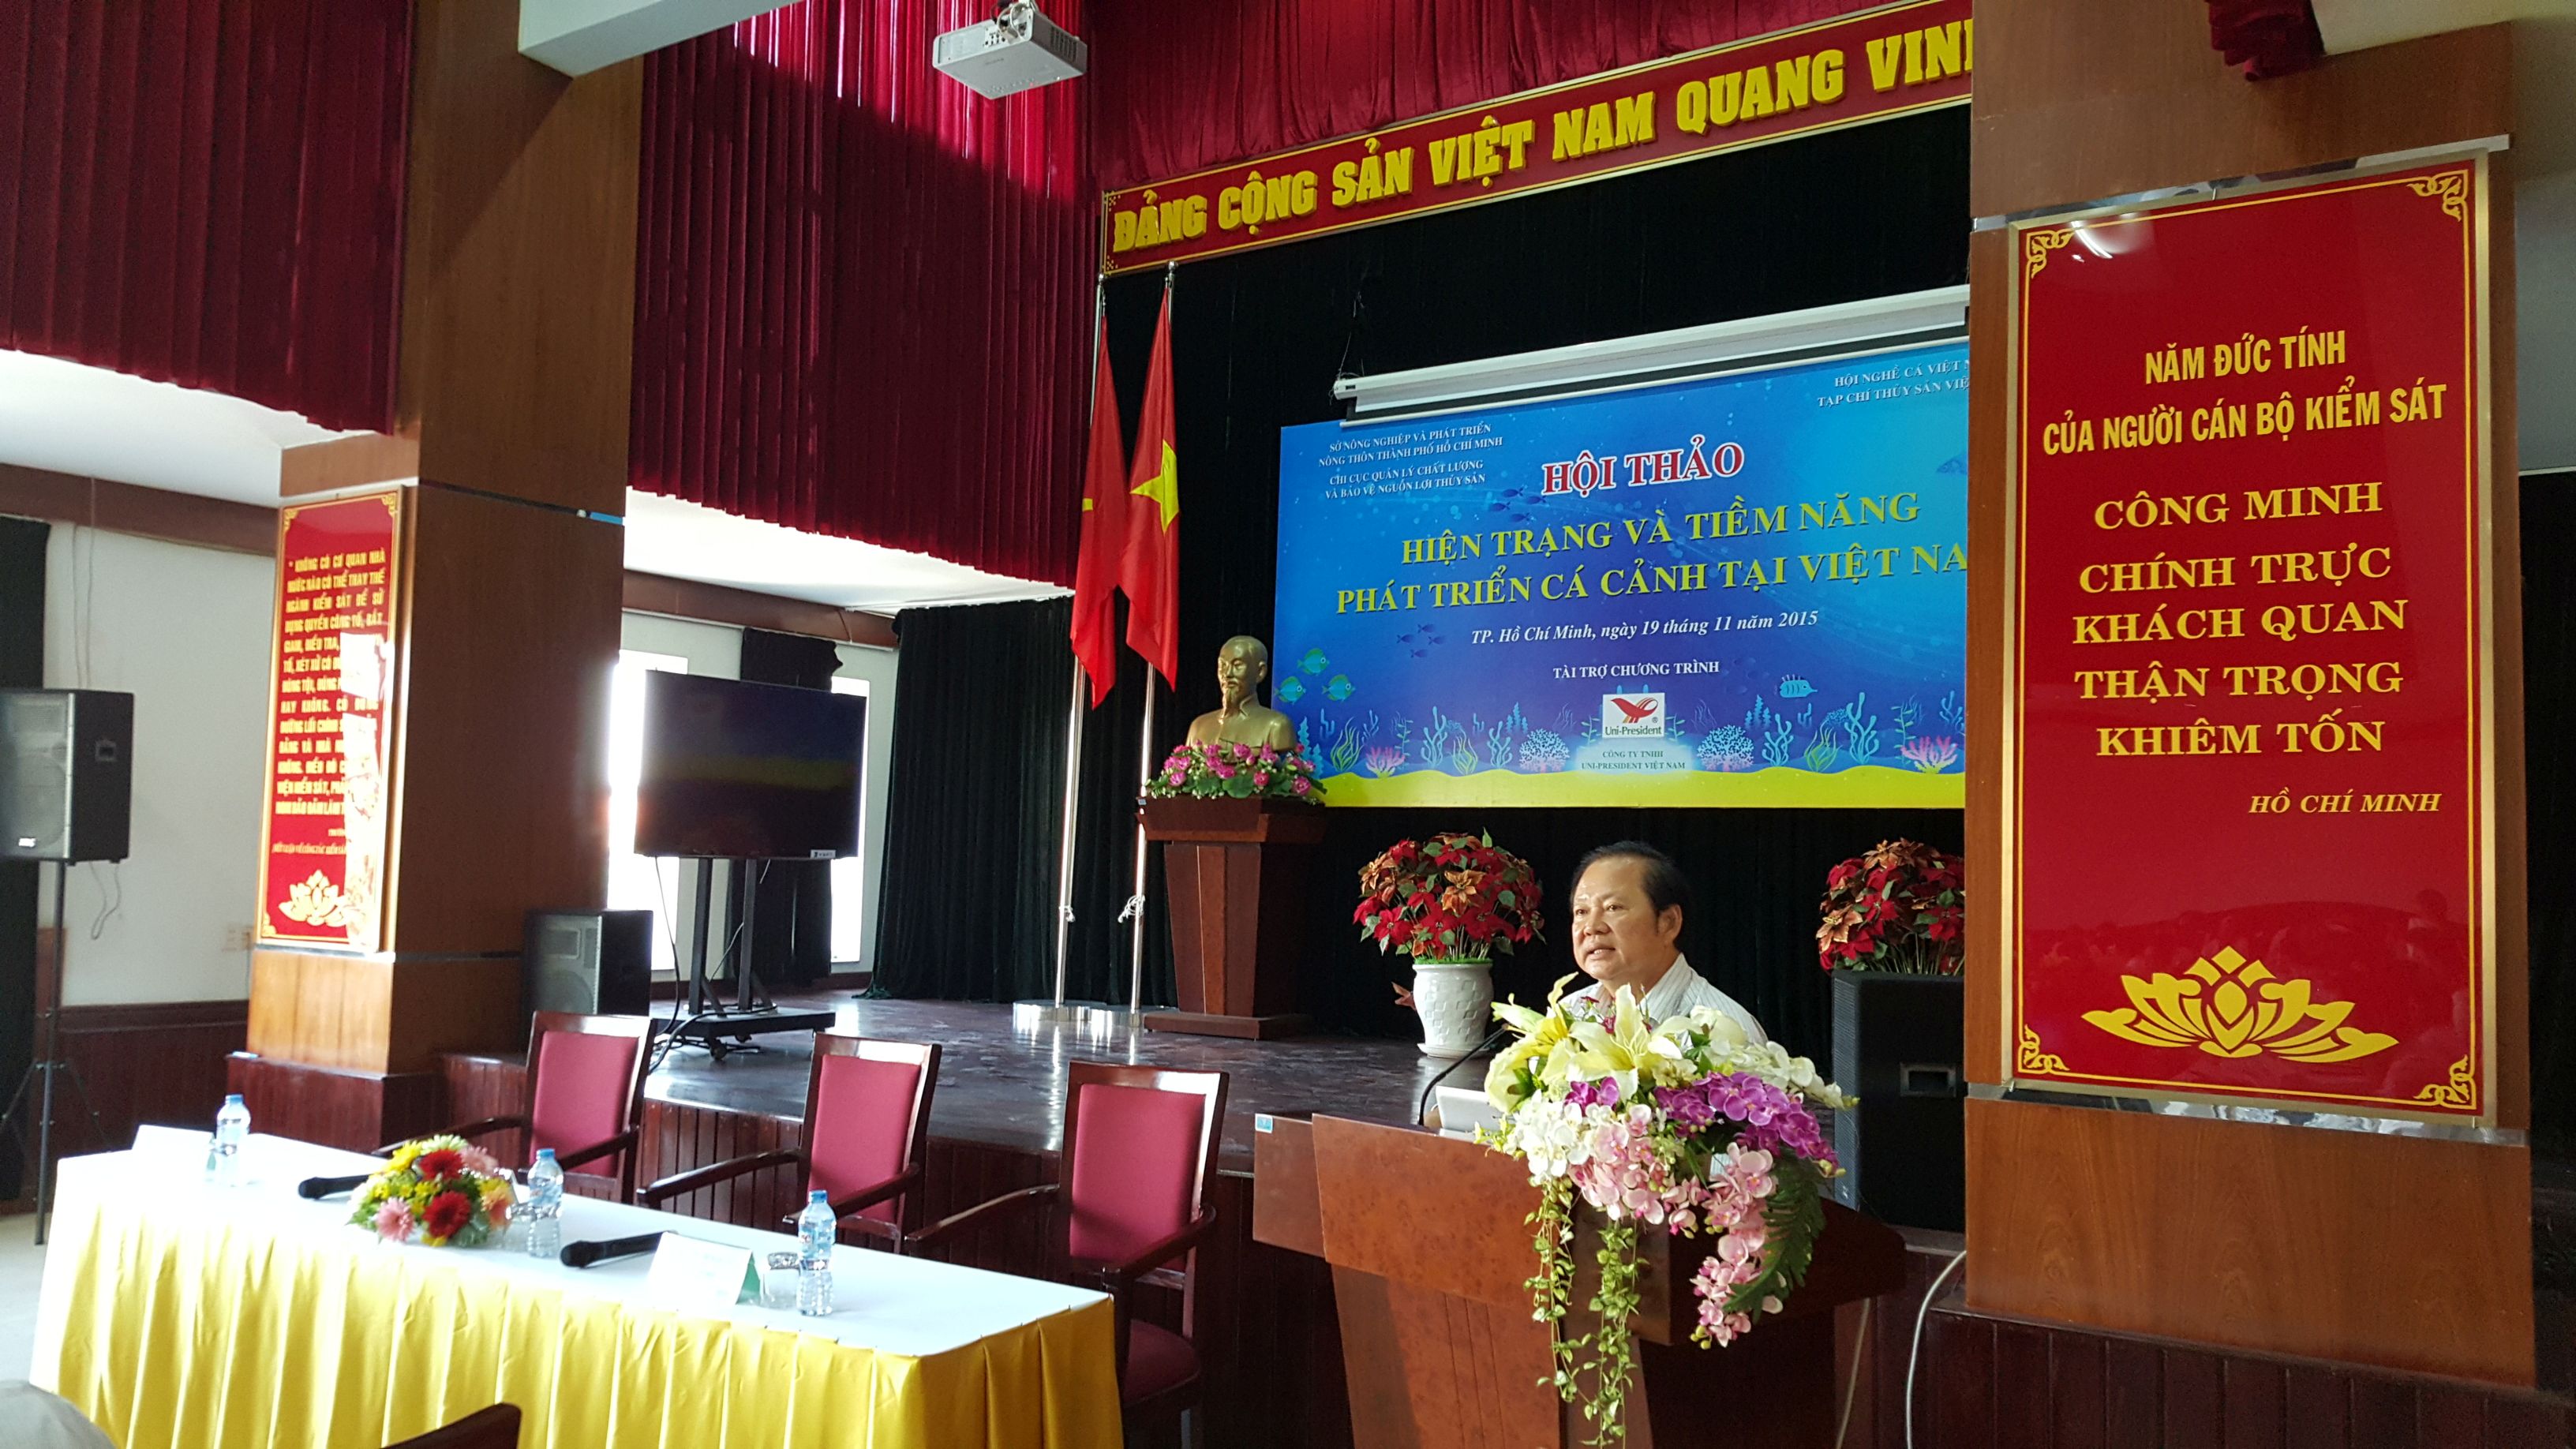 Hội thảo “Hiện trạng và tiềm năng phát triển cá cảnh tại Việt Nam”